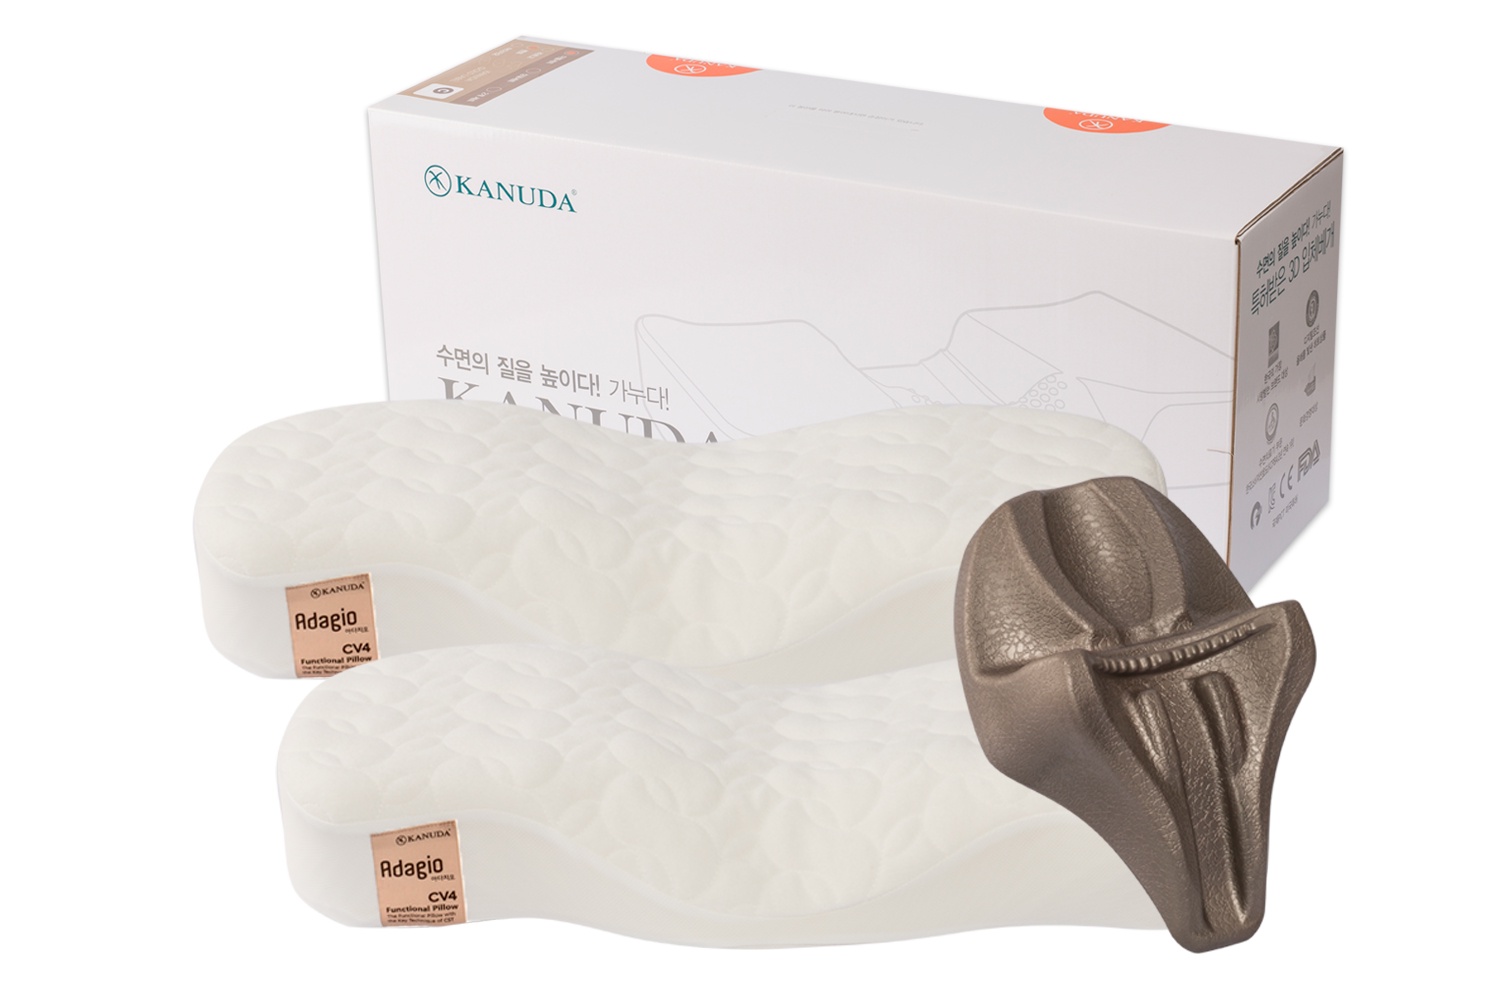 Ортопедическая подушка KANUDA Gold Label Adagio, набор 2 подушки + нэп, Корея, белый